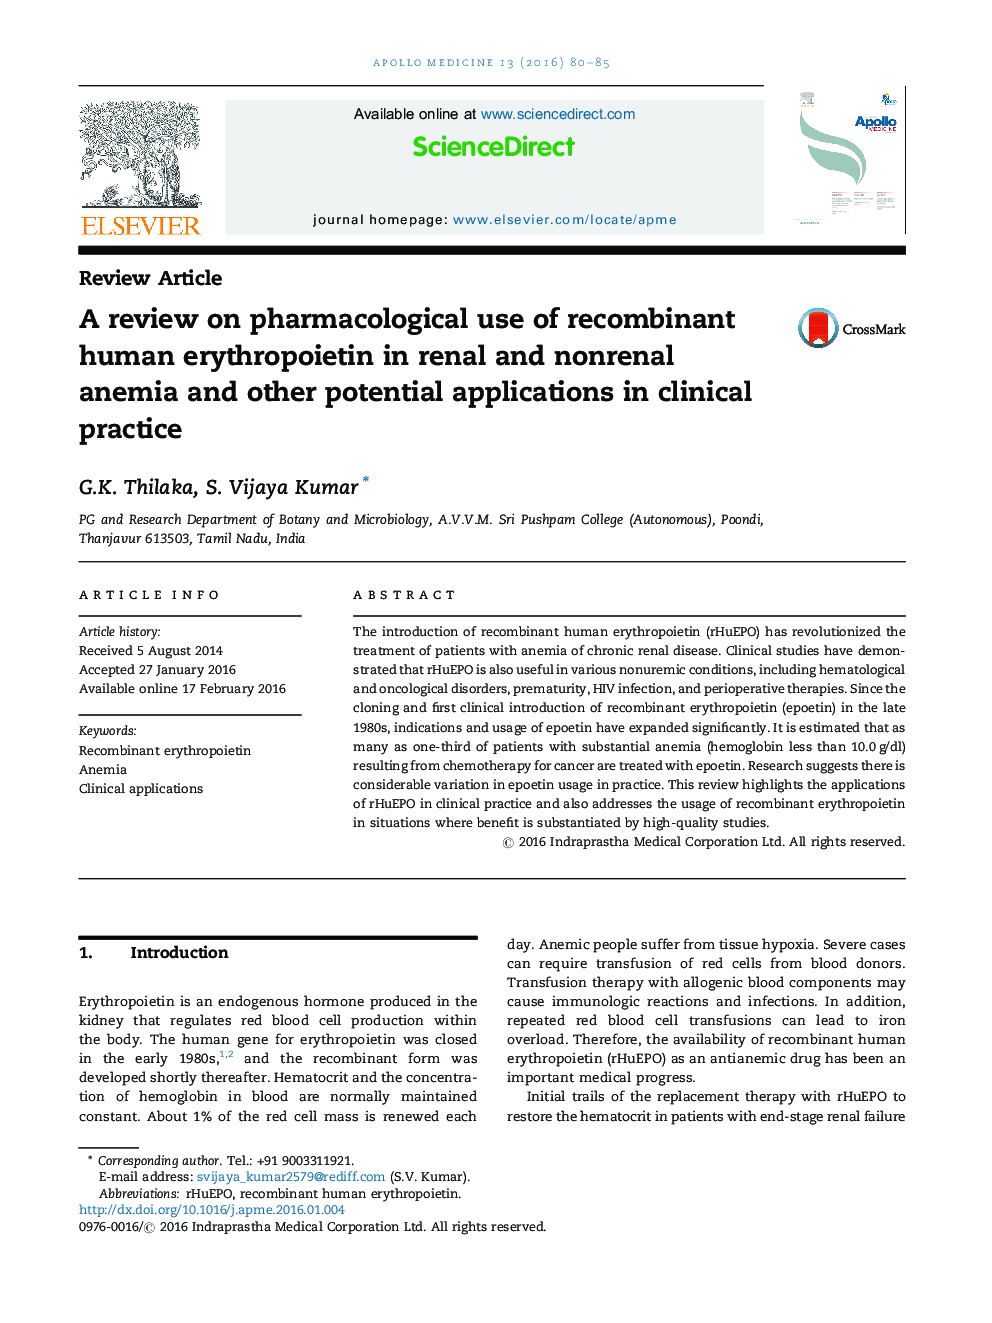 بررسی کاربرد فارماکولوژیکی اریتروپویتین نوترکیب انسانی در آنمی کلیوی و غیرطبیعی و دیگر کاربردهای بالقوه در عمل بالینی